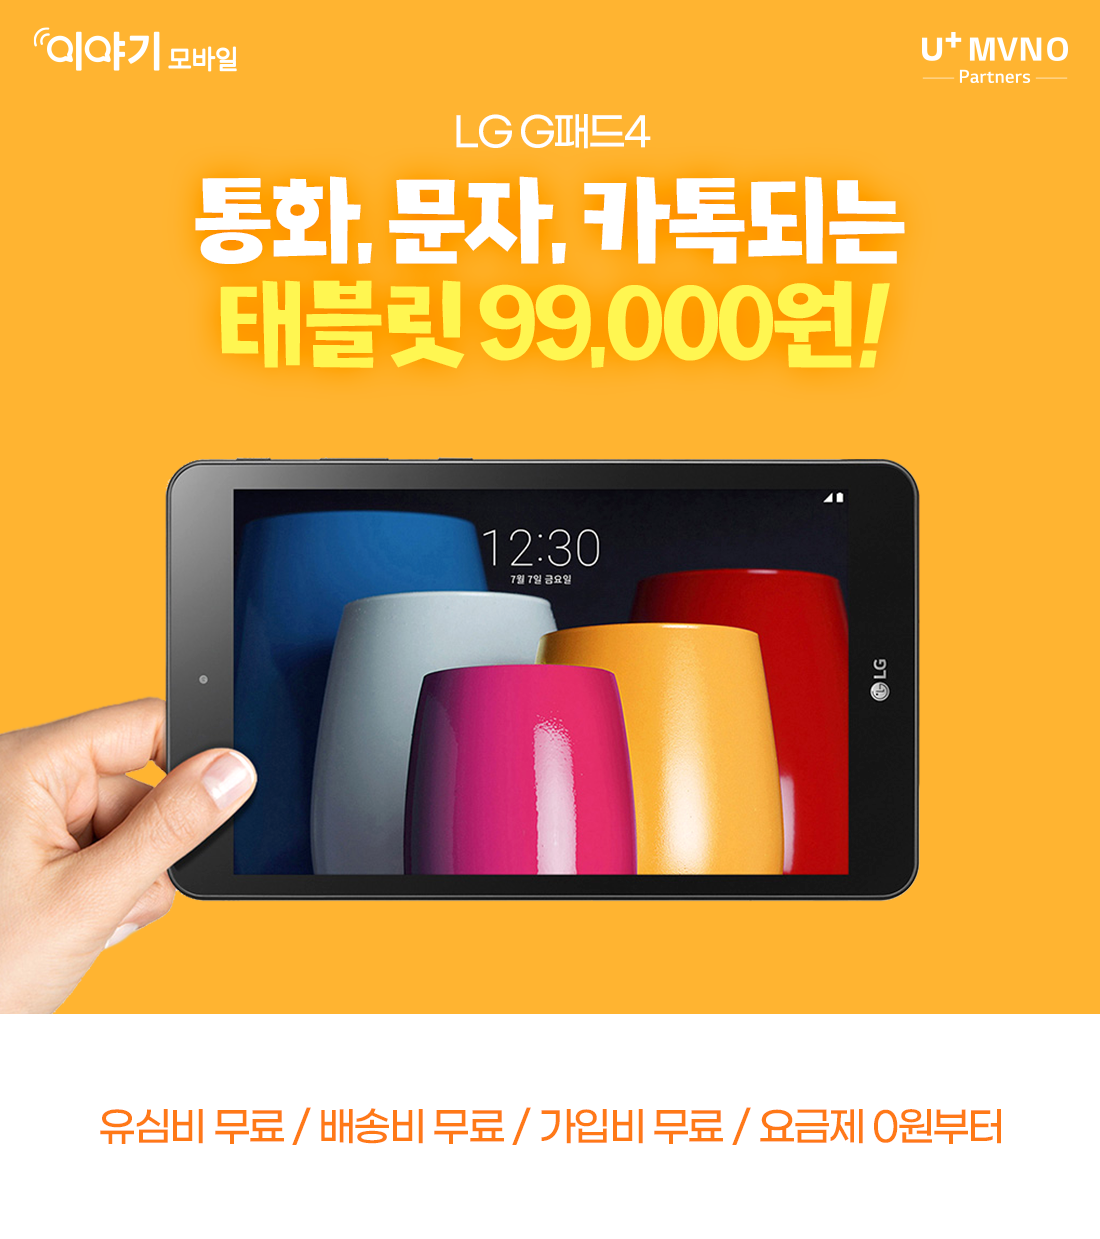 LG G패드4 통화,문자,카톡되는 태블릿 9만 9천원! 배송비 무료/가입비 무료/유심비 무료